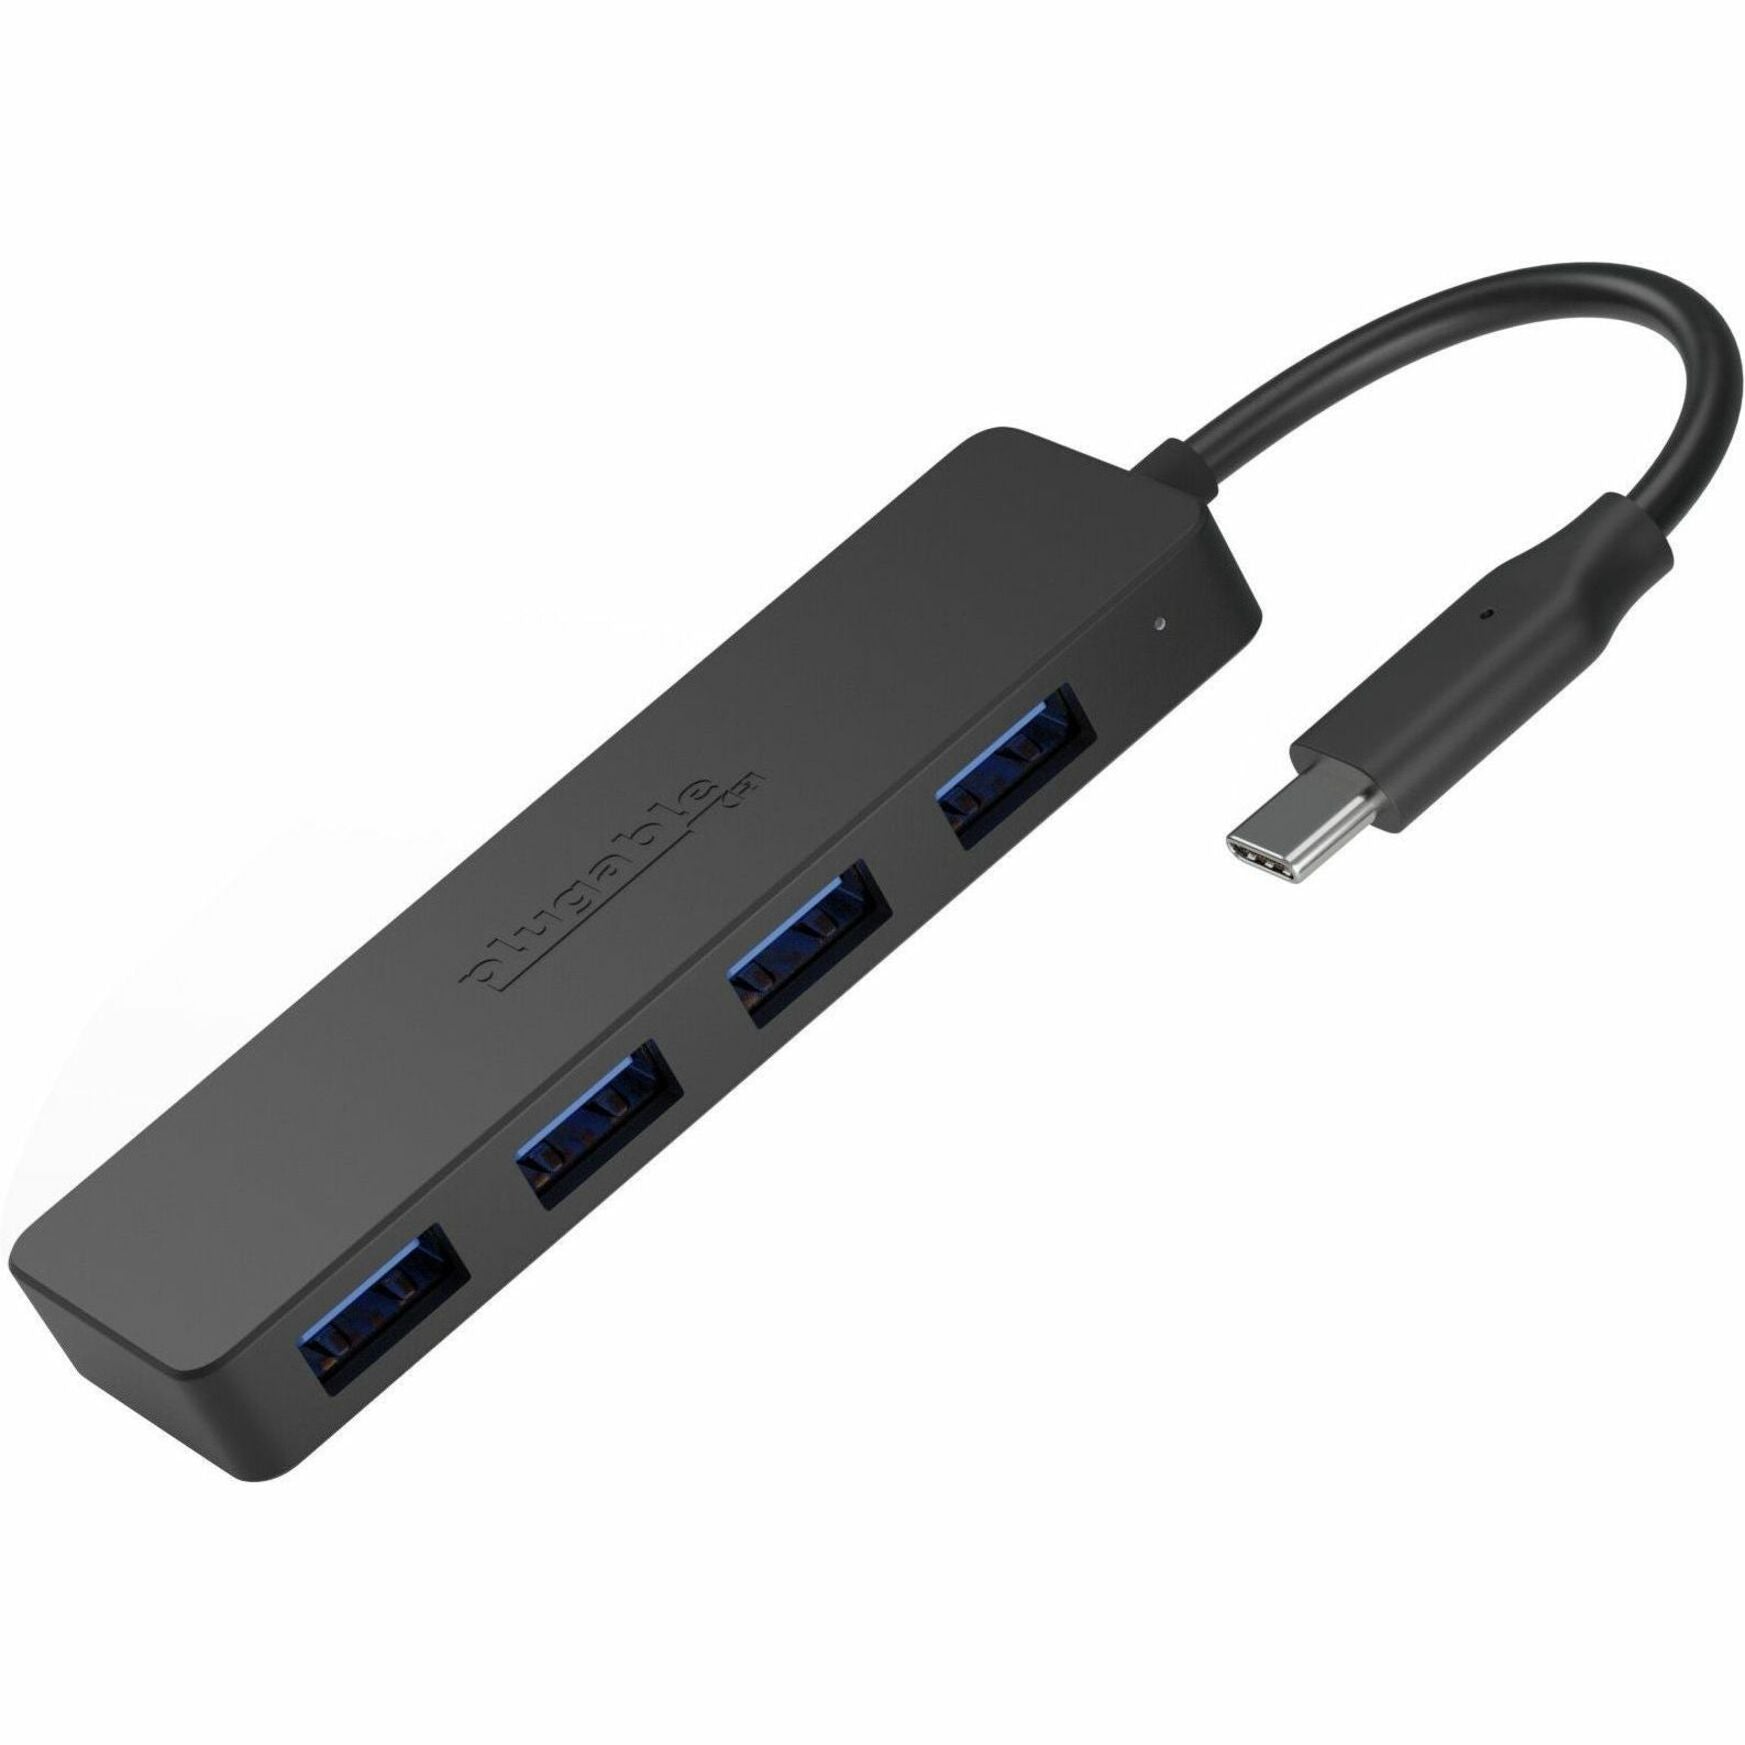 Plugable USBC-HUB4A USB Hub, 4 USB 3.0 Ports, Black